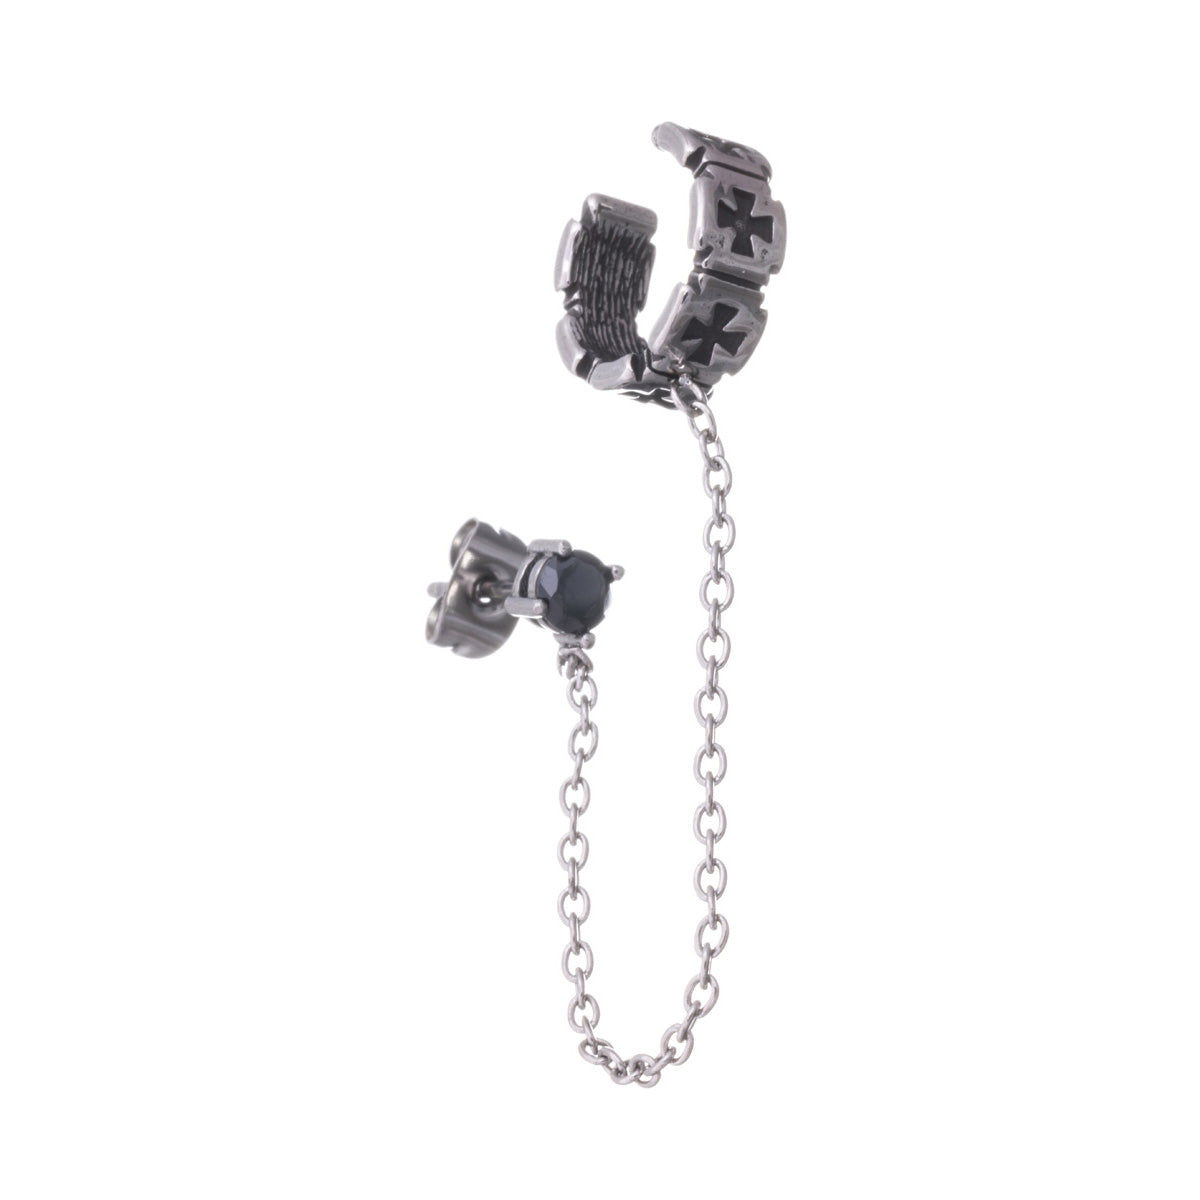 Iron cross ear cuff chain earring 1pc (Steel 316L)